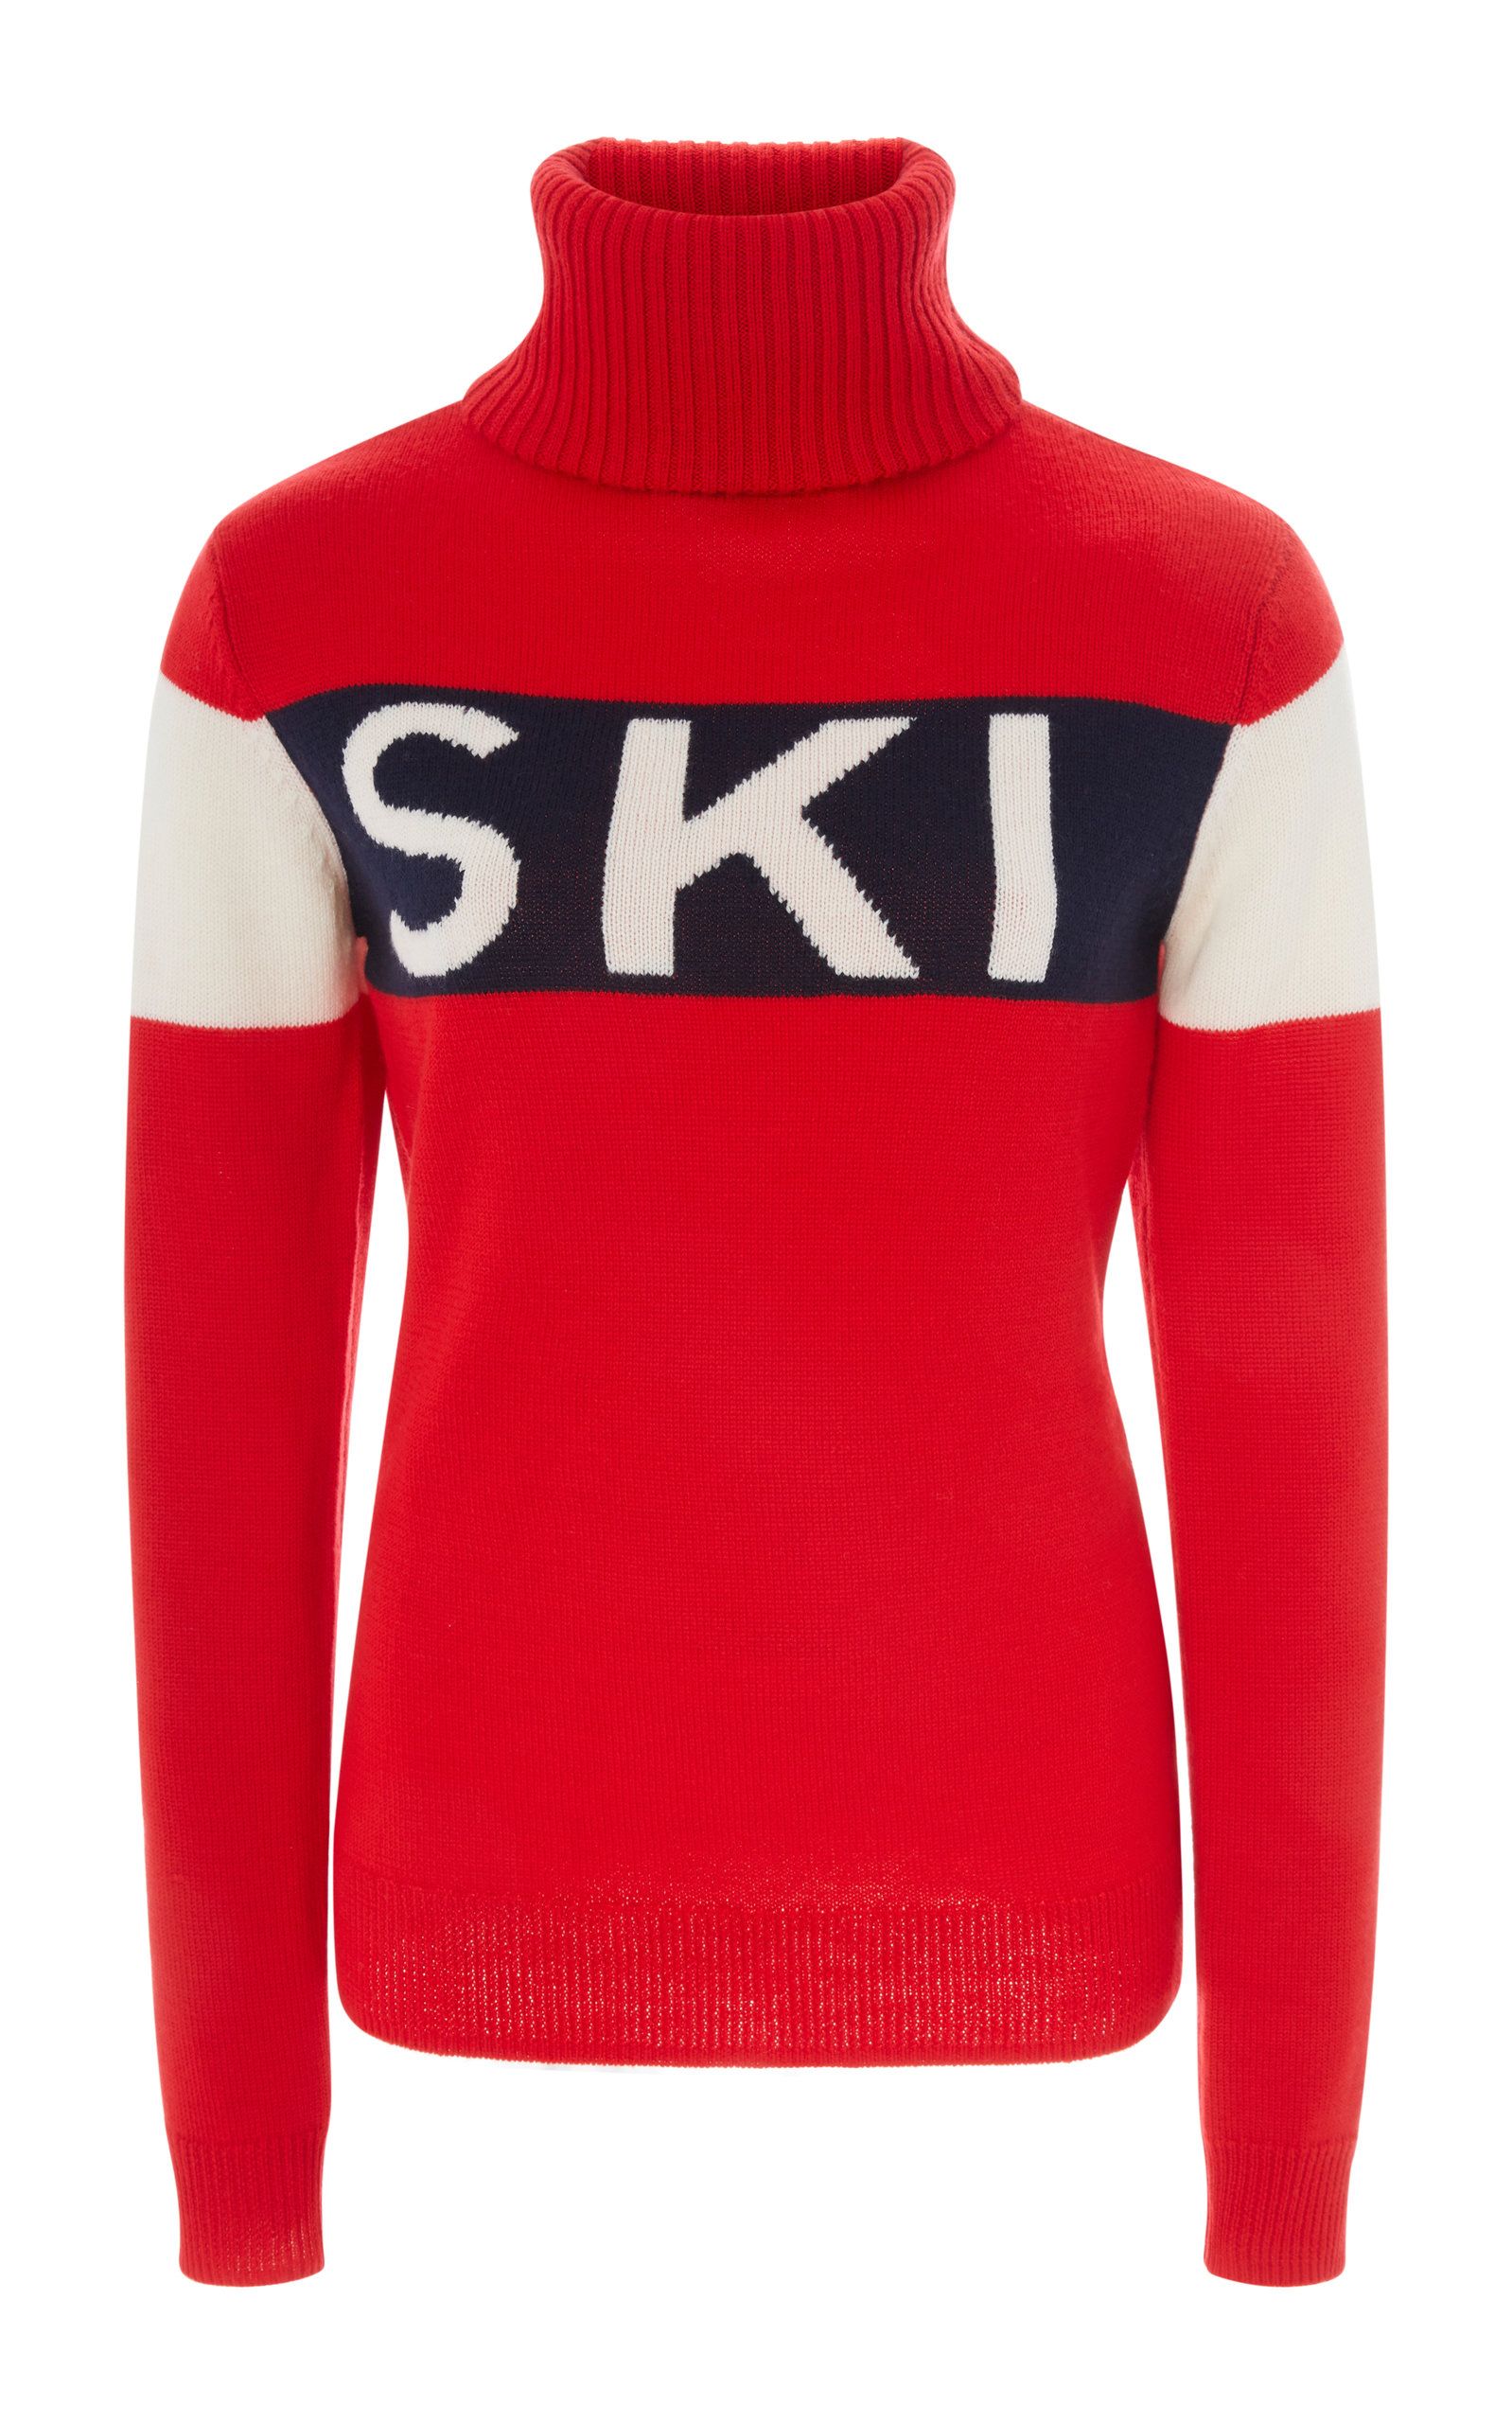 Ski Intarsia-Knit Wool Sweater by Perfect Moment | Moda Operandi | Moda Operandi Global